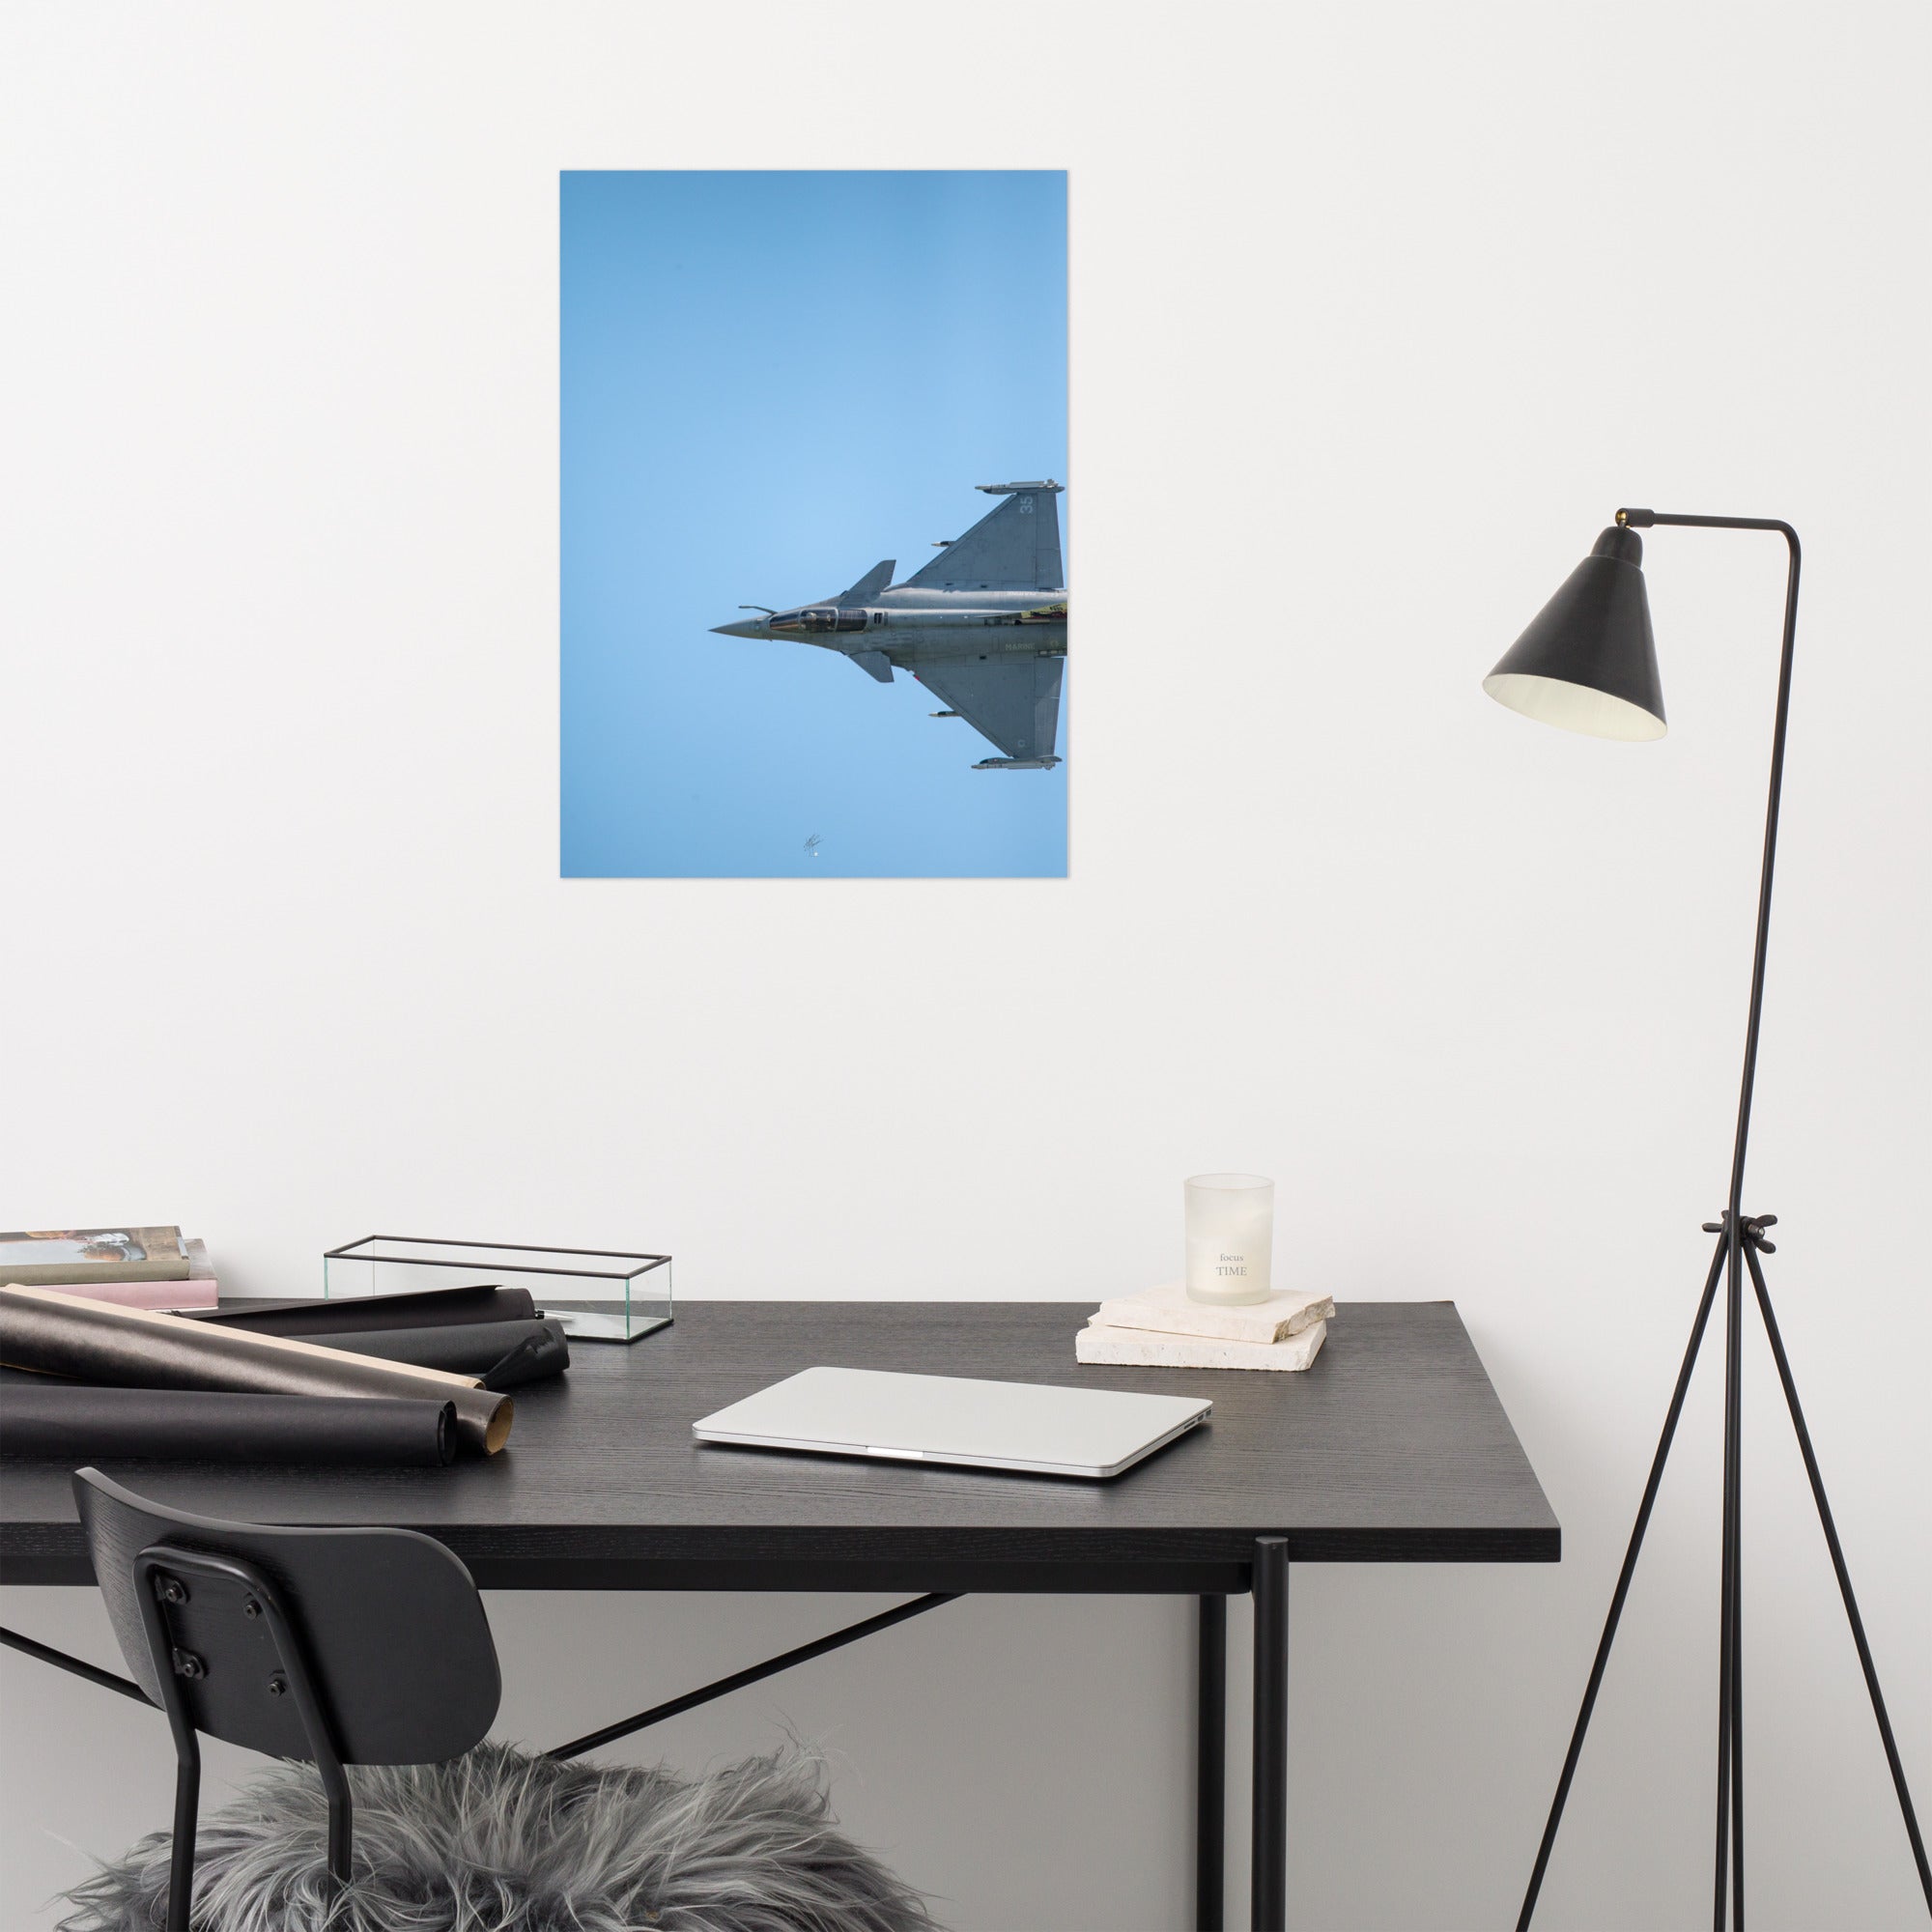 Avion de chasse Rafale vu d'une perspective aérienne, avec un ciel bleu comme toile de fond, photographié par Yann Peccard.